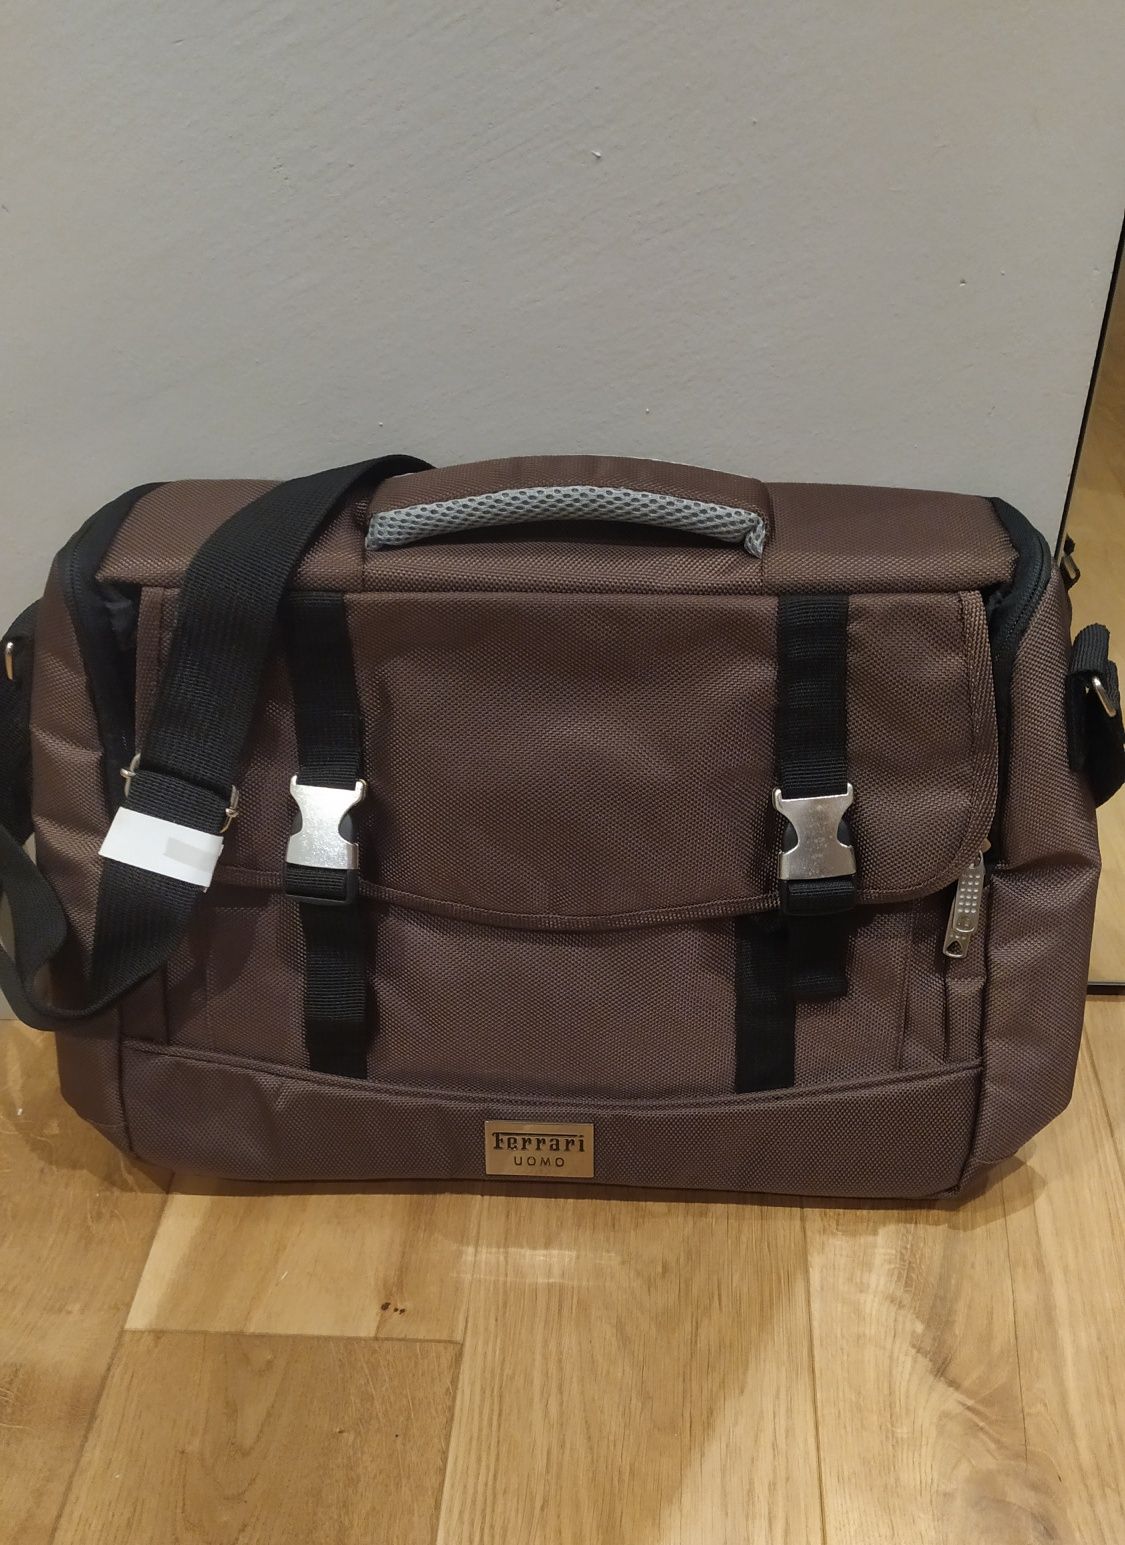 Nowa torba na laptopa FERRARI Uomo. Brązowa tekstylna.